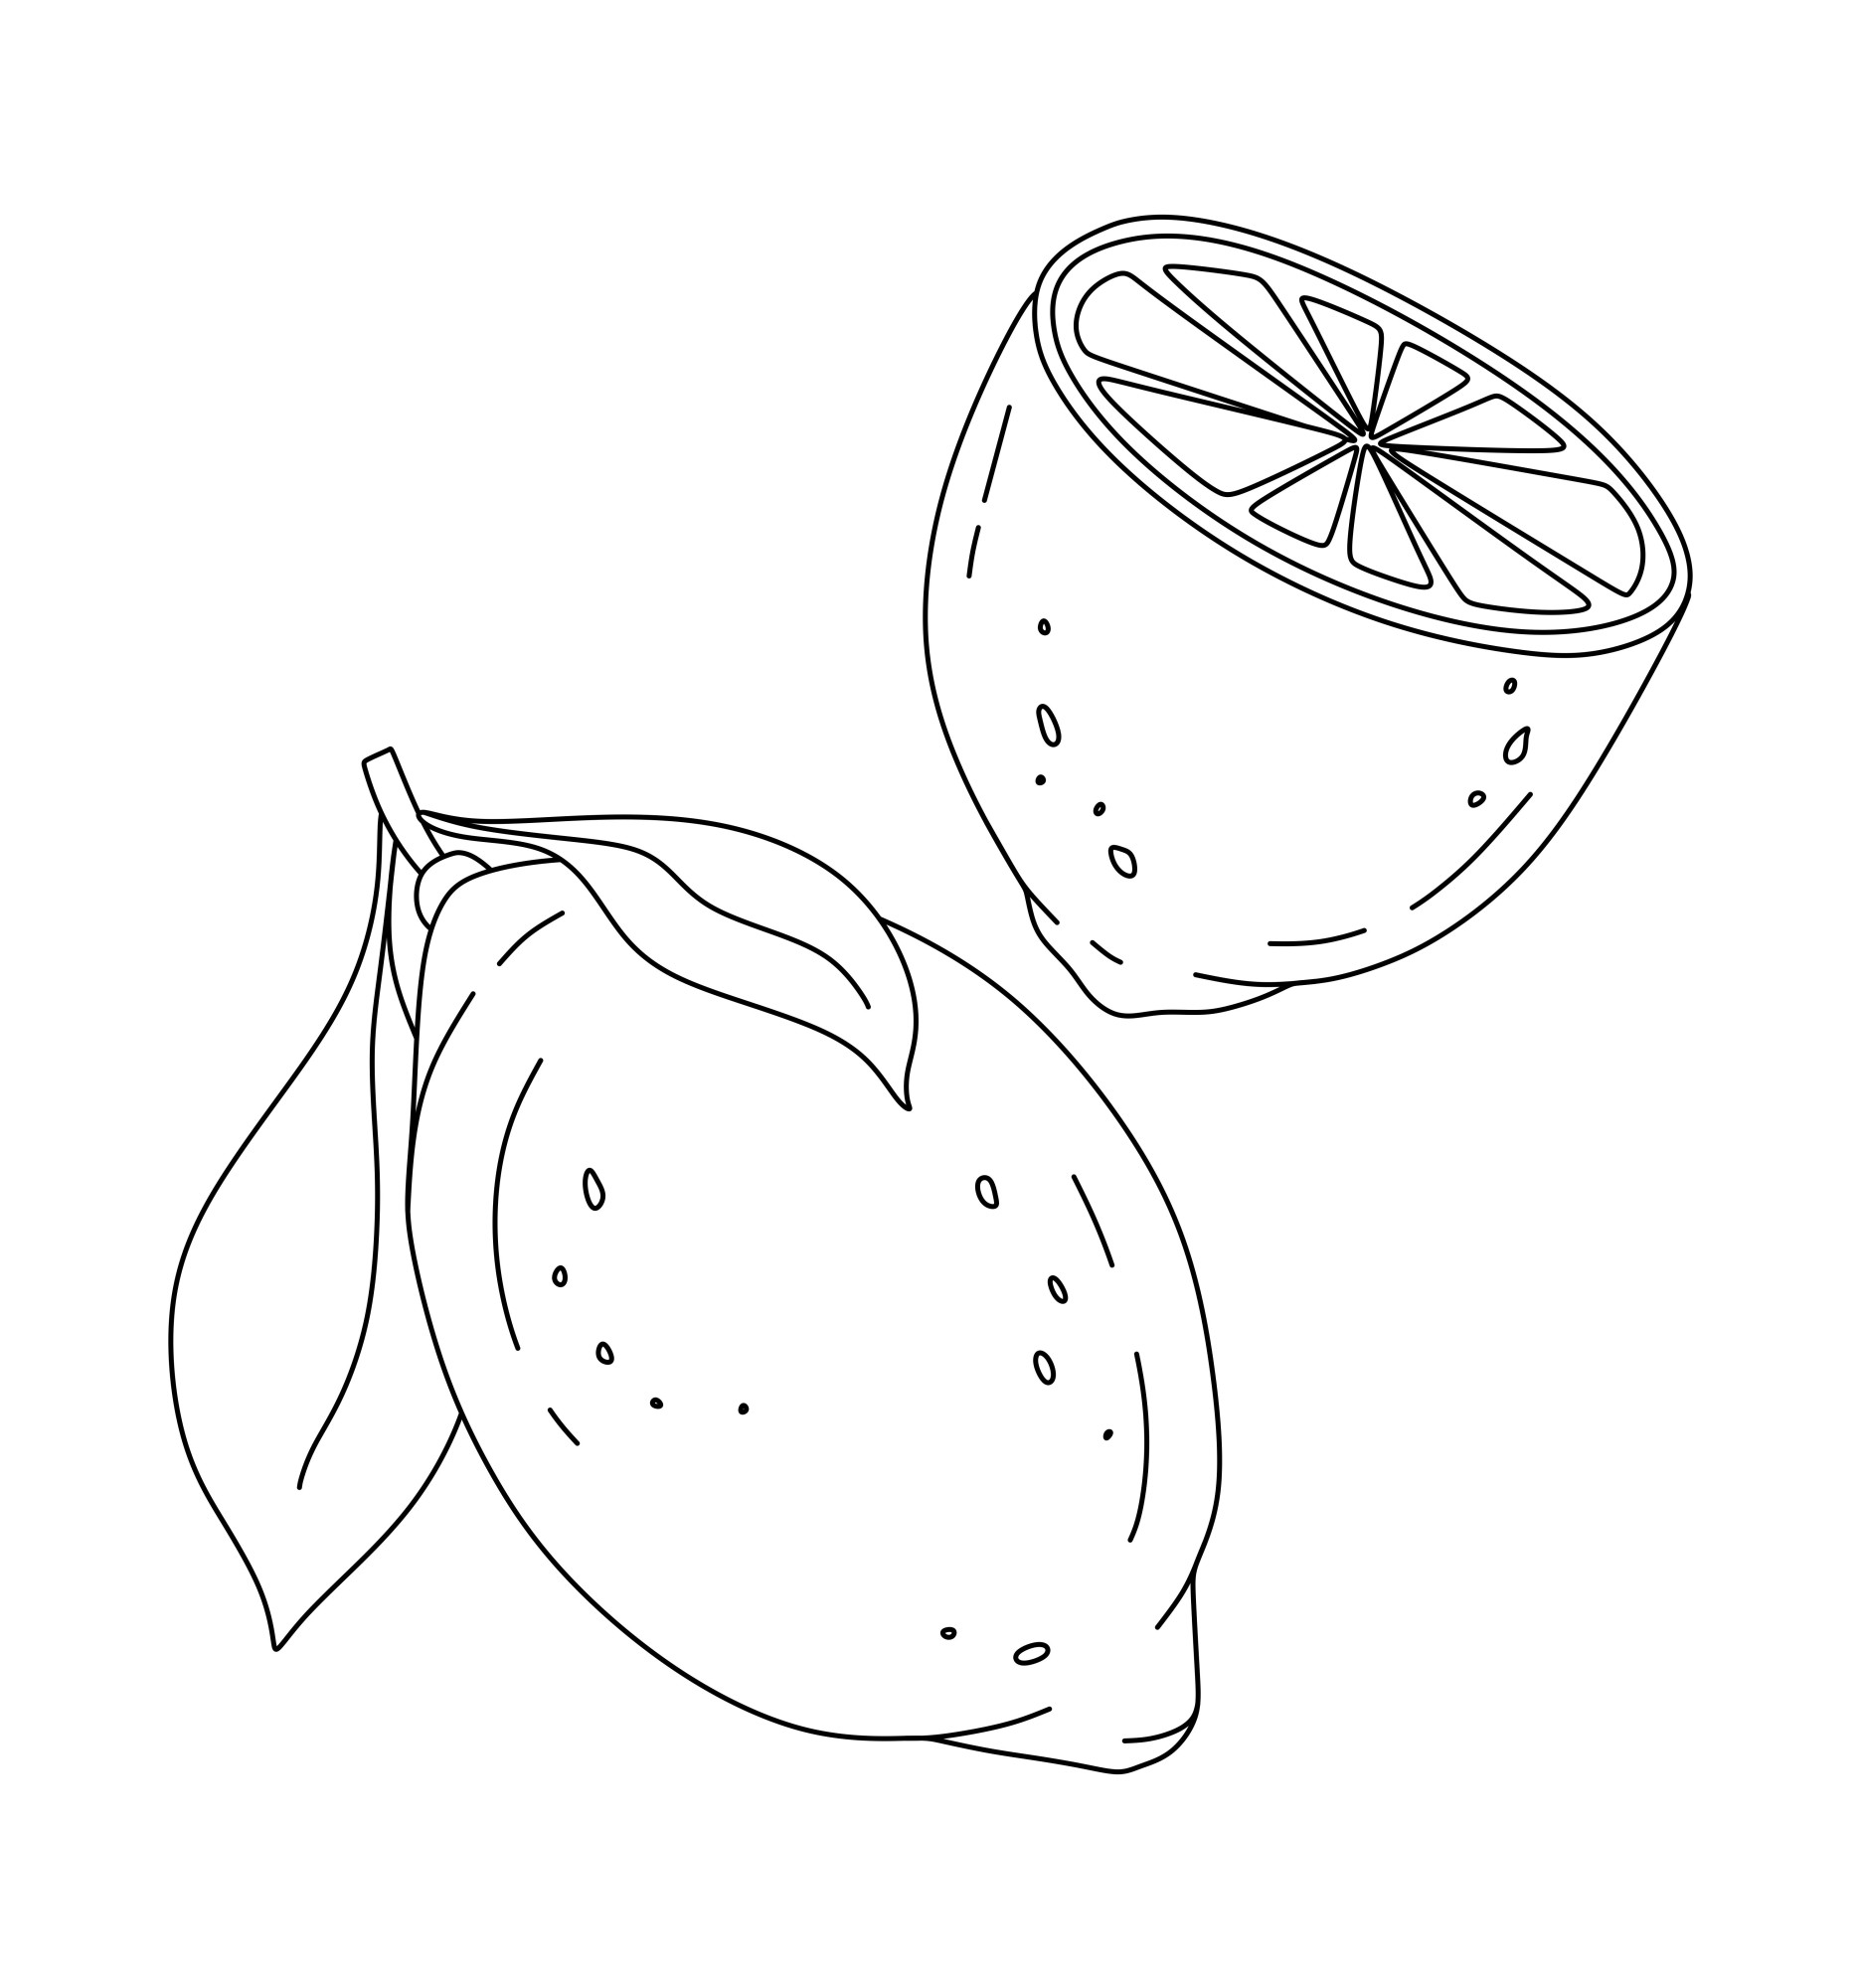 Раскраска для детей: ароматный лимон с половинкой